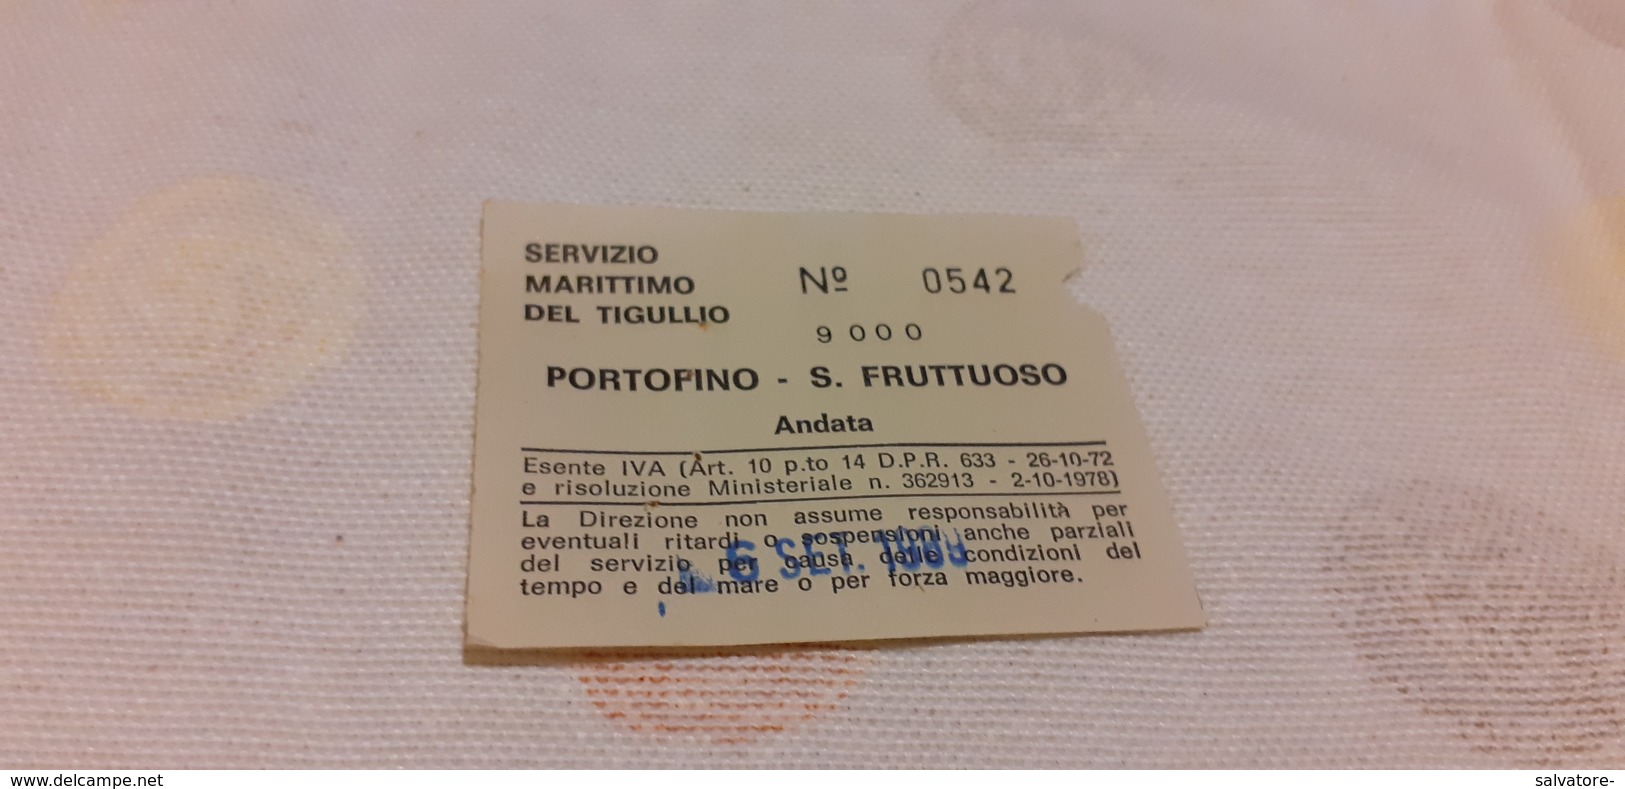 BIGLIETTO SERVIZIO MARITTIMO DEL TIGULLIO DA PORTOFINO A SAN FRUTTUOSO 1989 - Europa